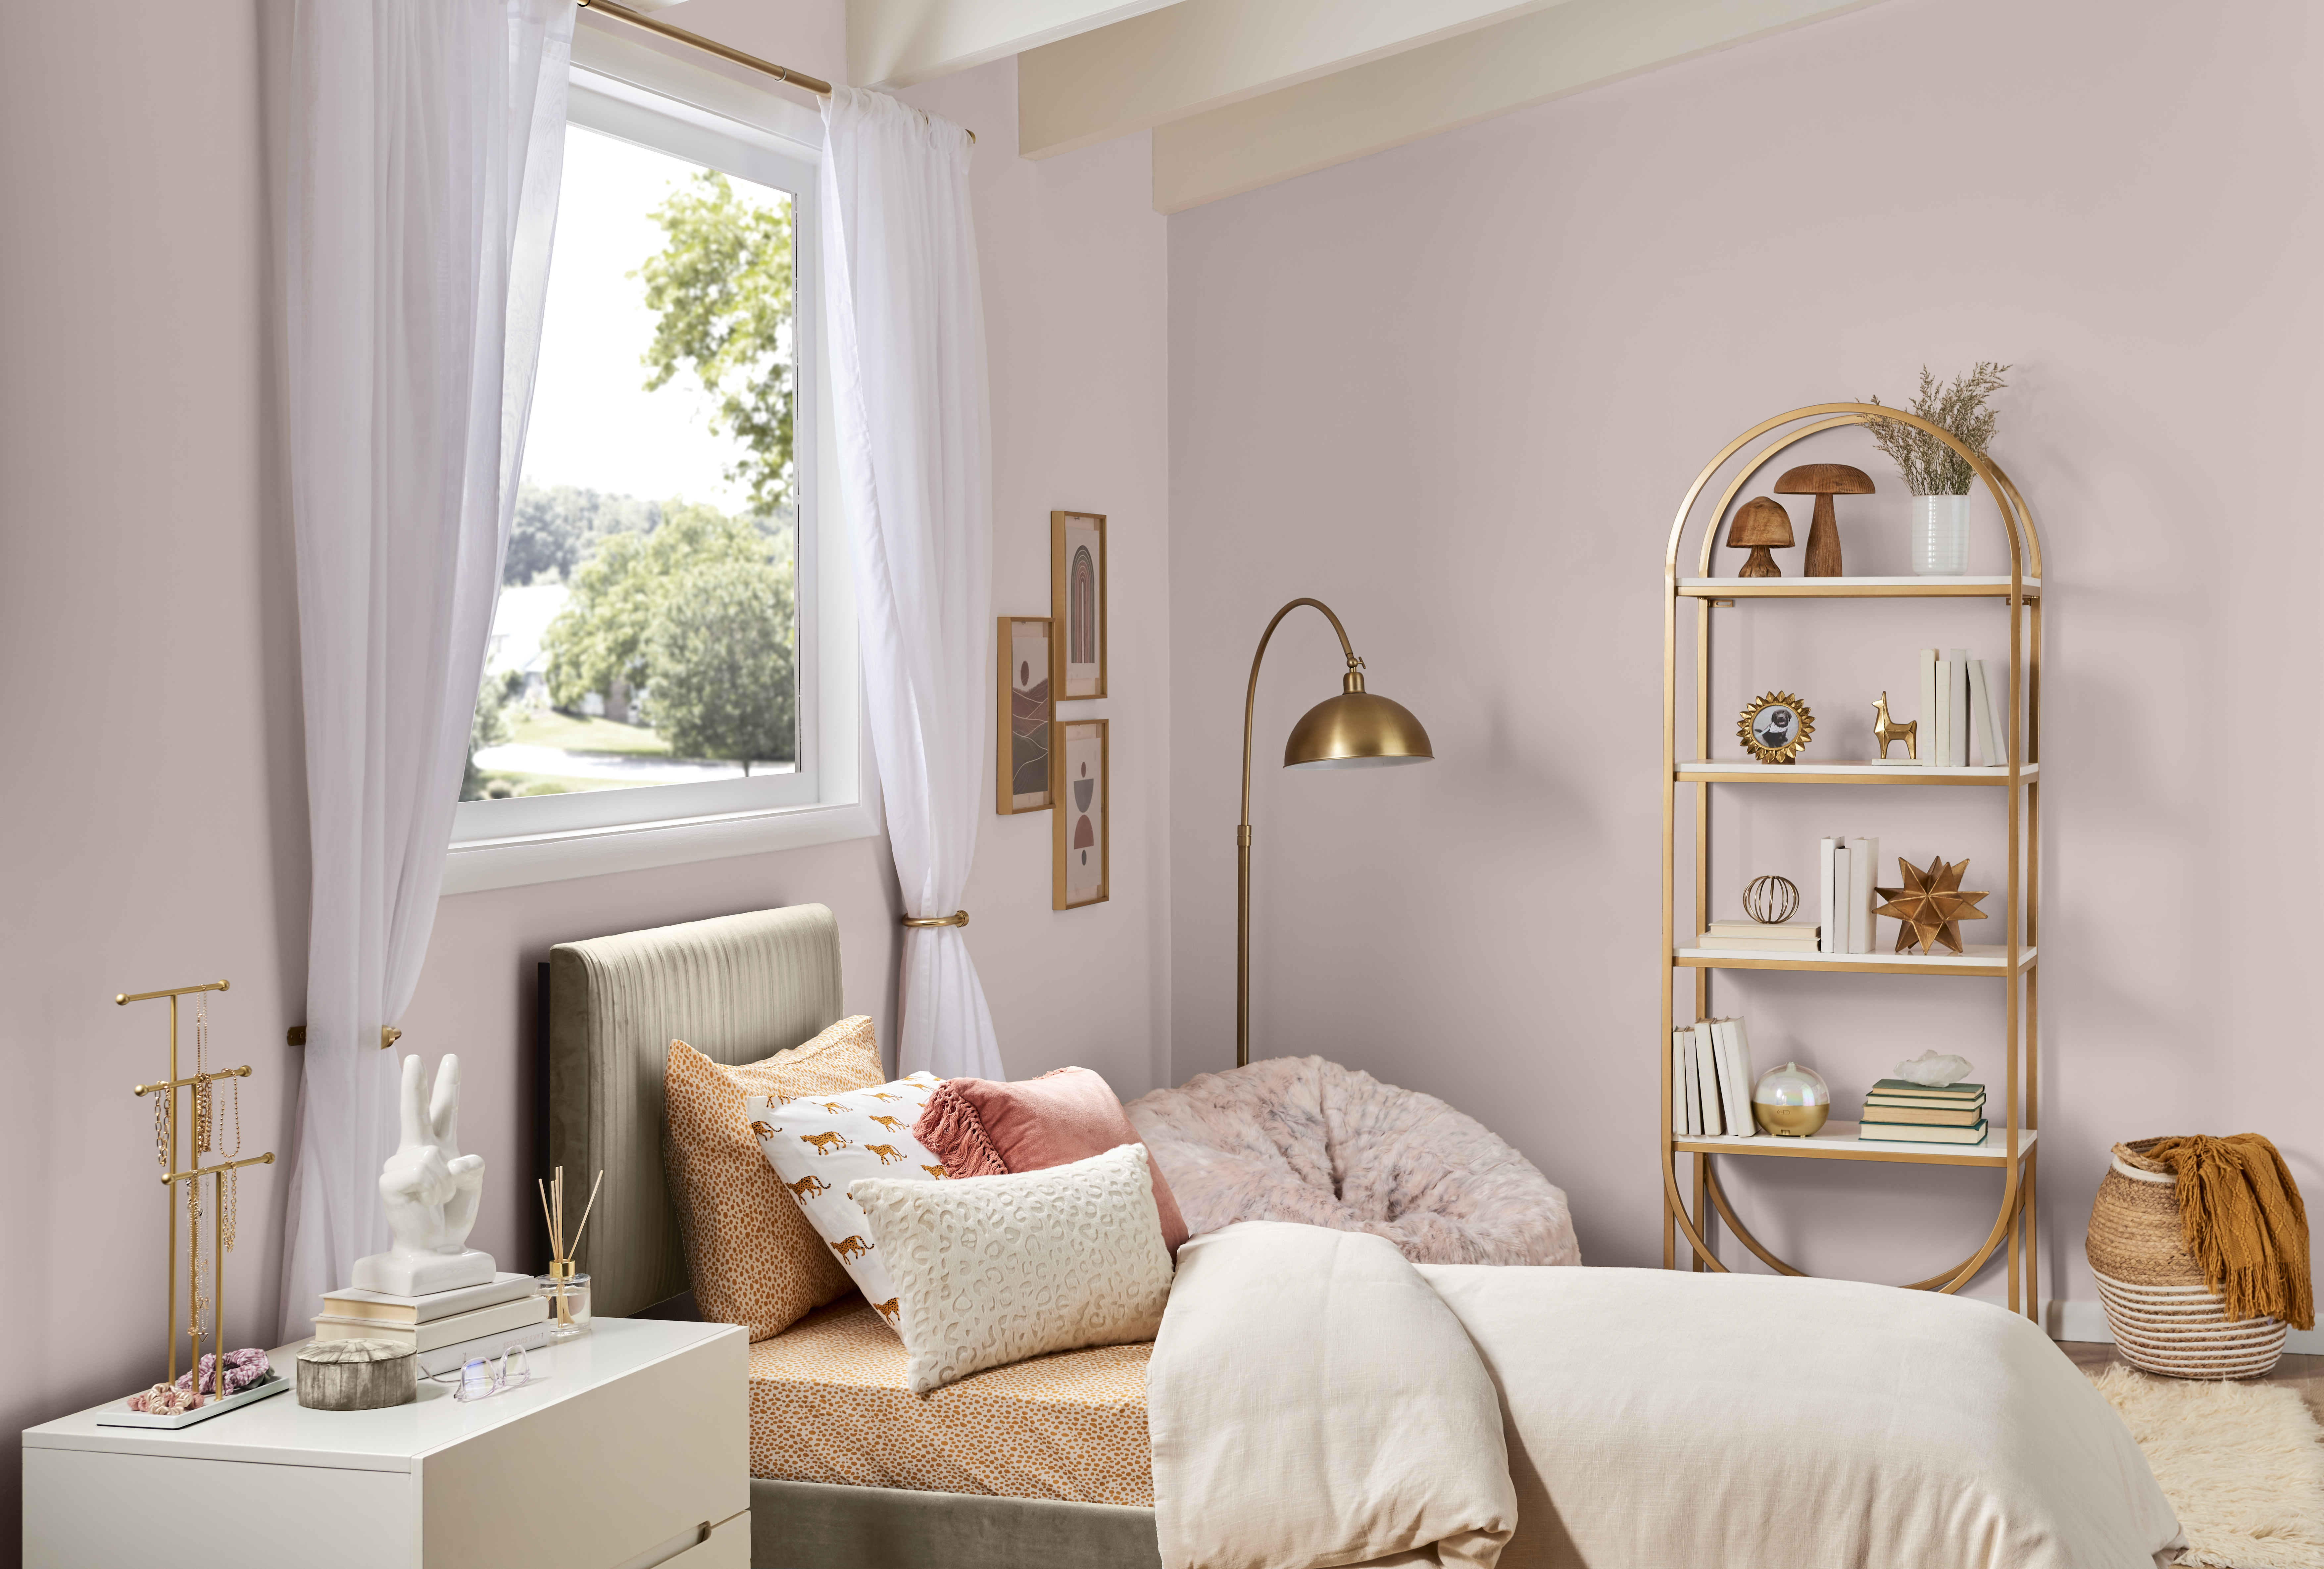 Une chambre chic avec des murs peints en une teinte de rose chaud et saturé. Accessoires et meubles d'accent dorés. 